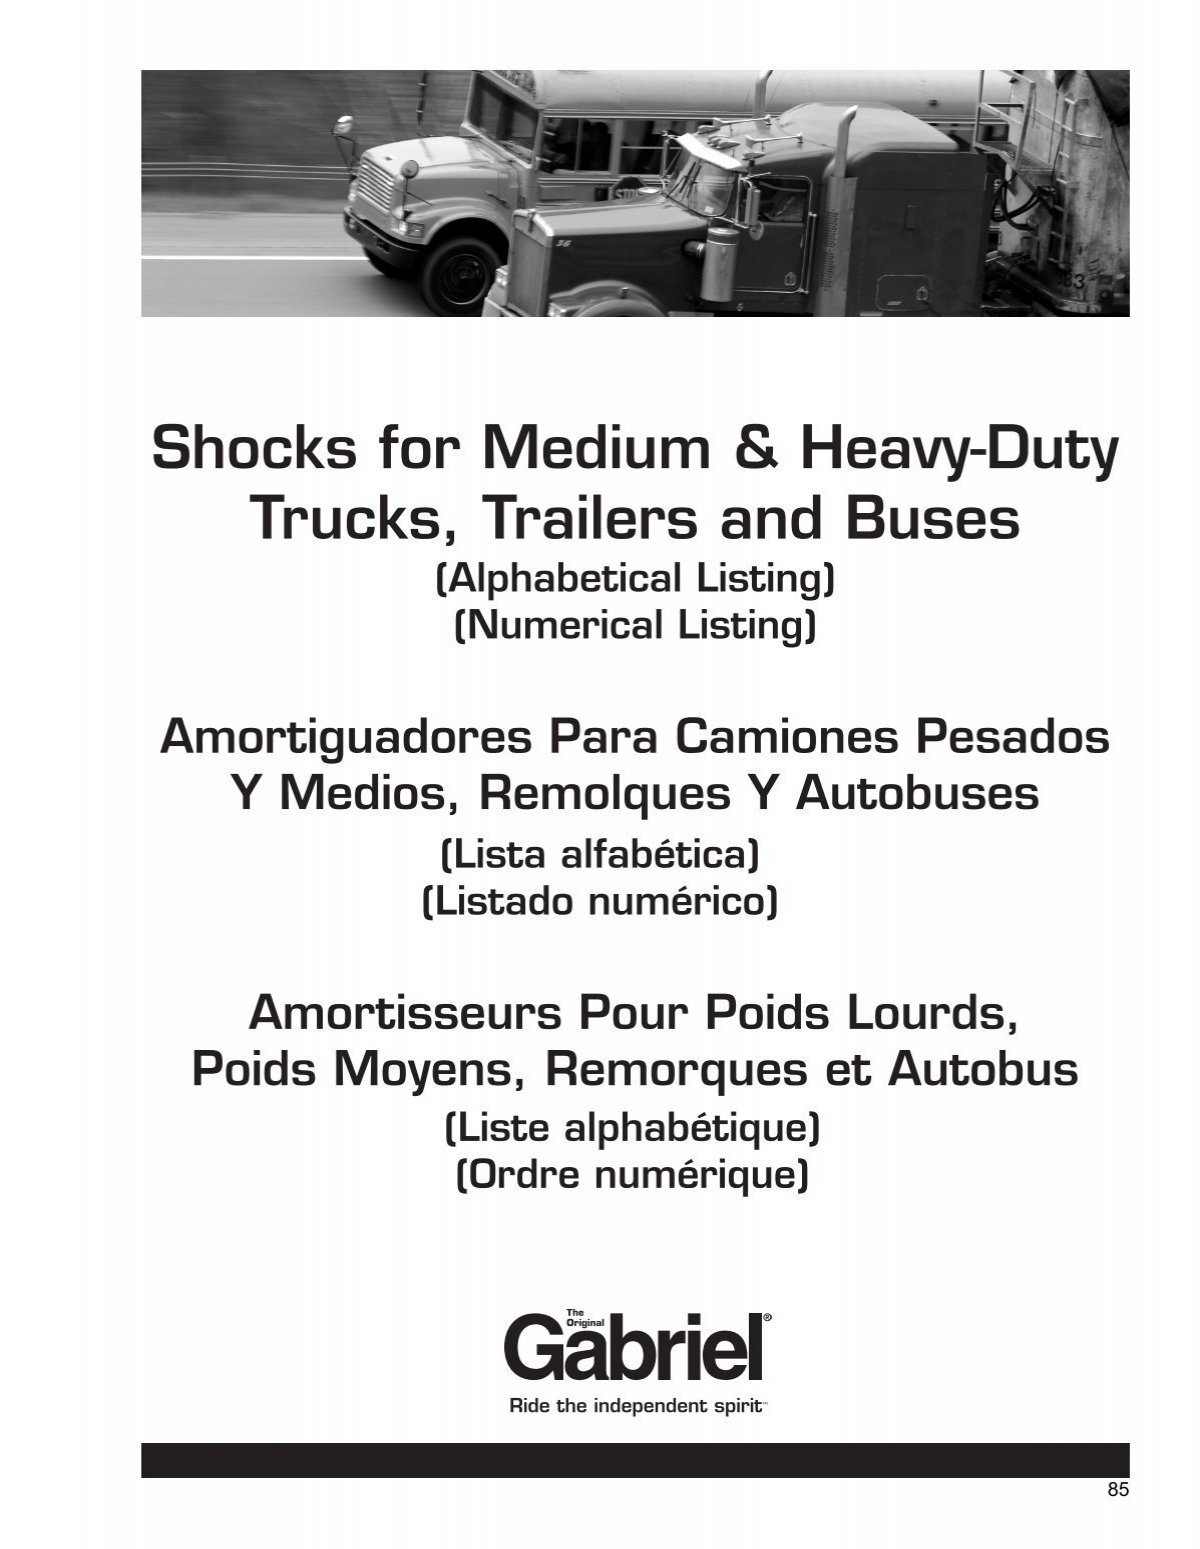 Shocks for Medium & Heavy-Duty Trucks, Trailers & Buses  -  Gabriel